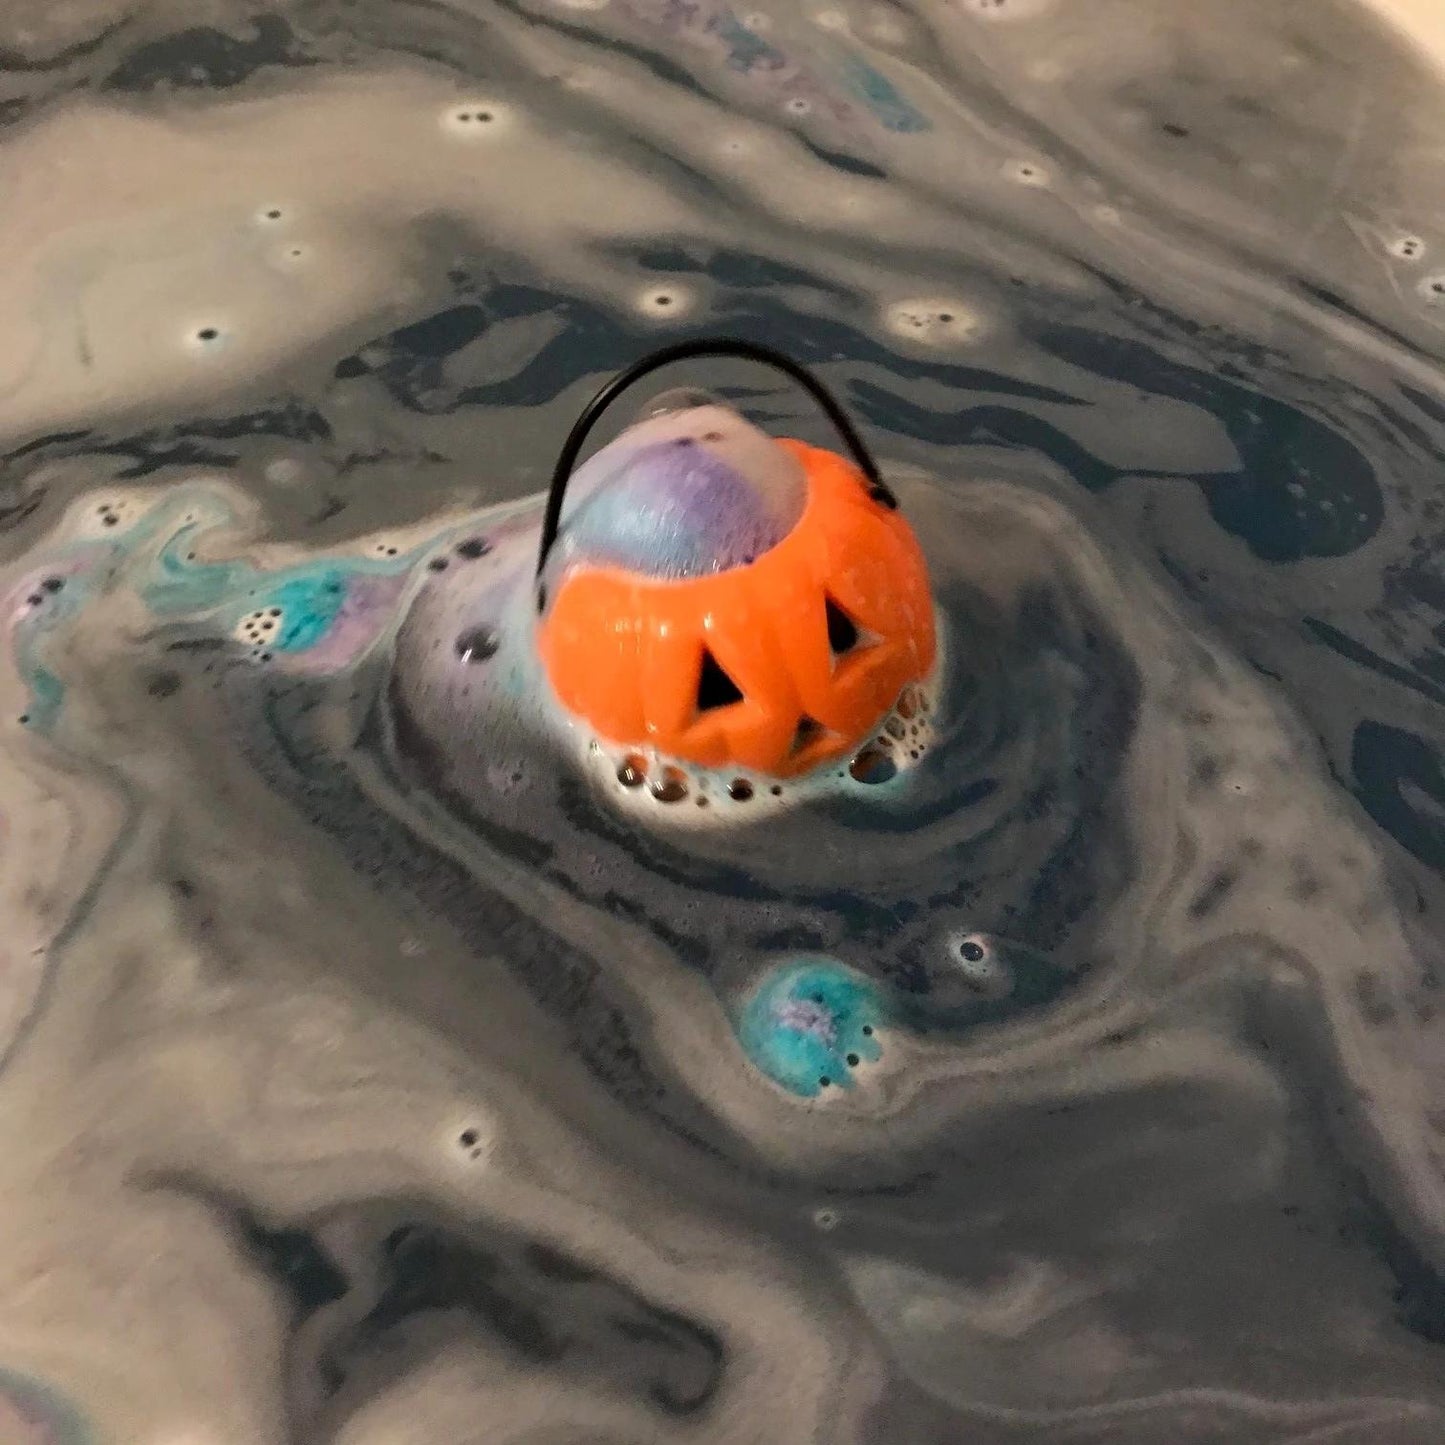 Cauldron / Colored Pumpkin / Skulls Kettles